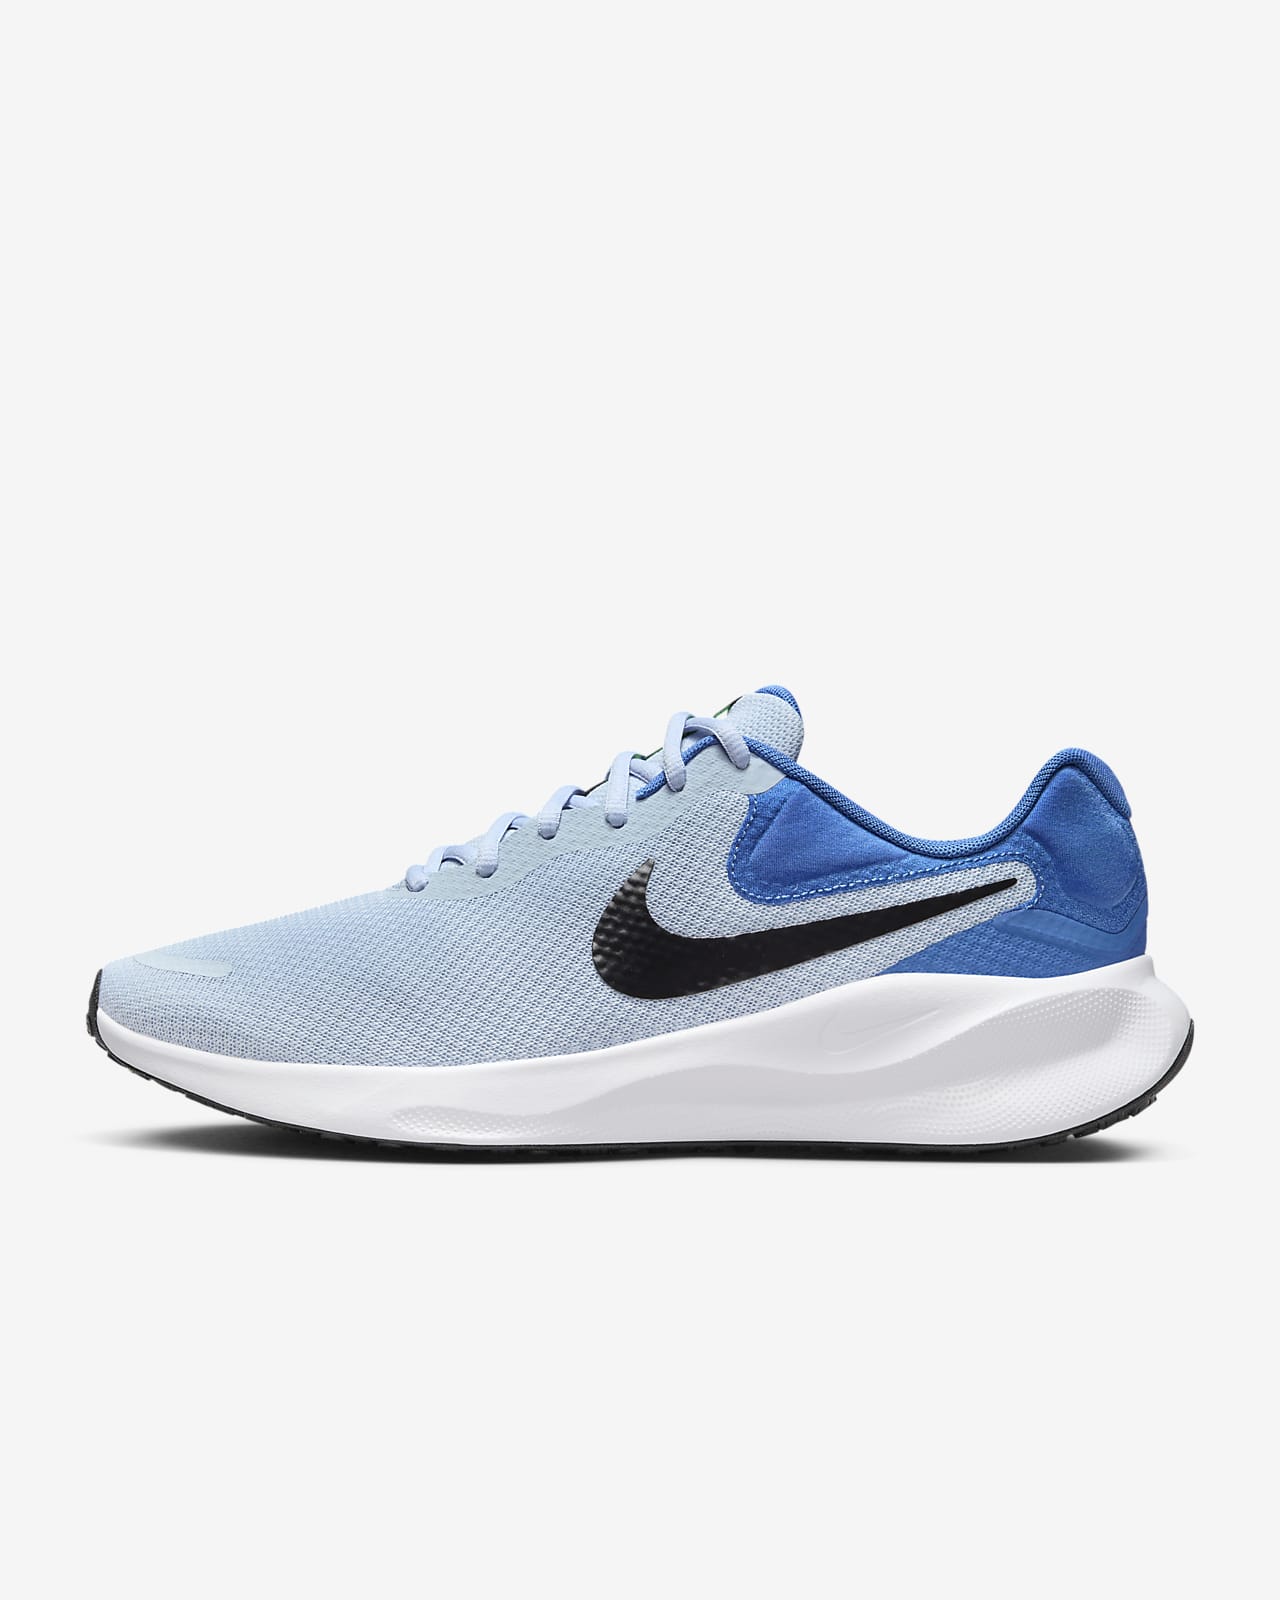 Ανδρικά παπούτσια για τρέξιμο σε δρόμο Nike Revolution 7 (πολύ φαρδιά)